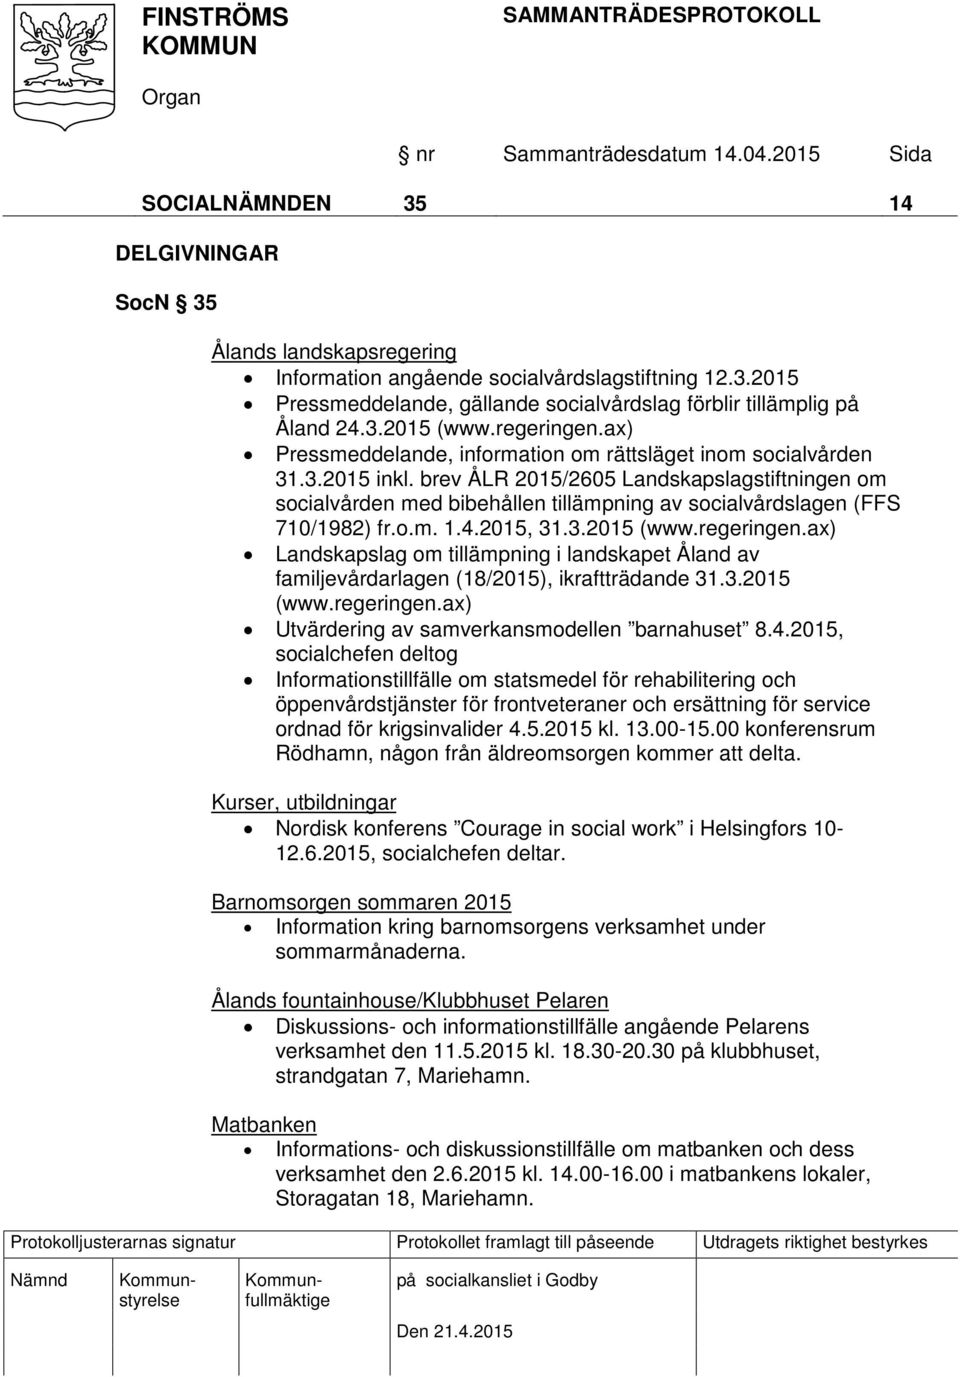 brev ÅLR 2015/2605 Landskapslagstiftningen om socialvården med bibehållen tillämpning av socialvårdslagen (FFS 710/1982) fr.o.m. 1.4.2015, 31.3.2015 (www.regeringen.